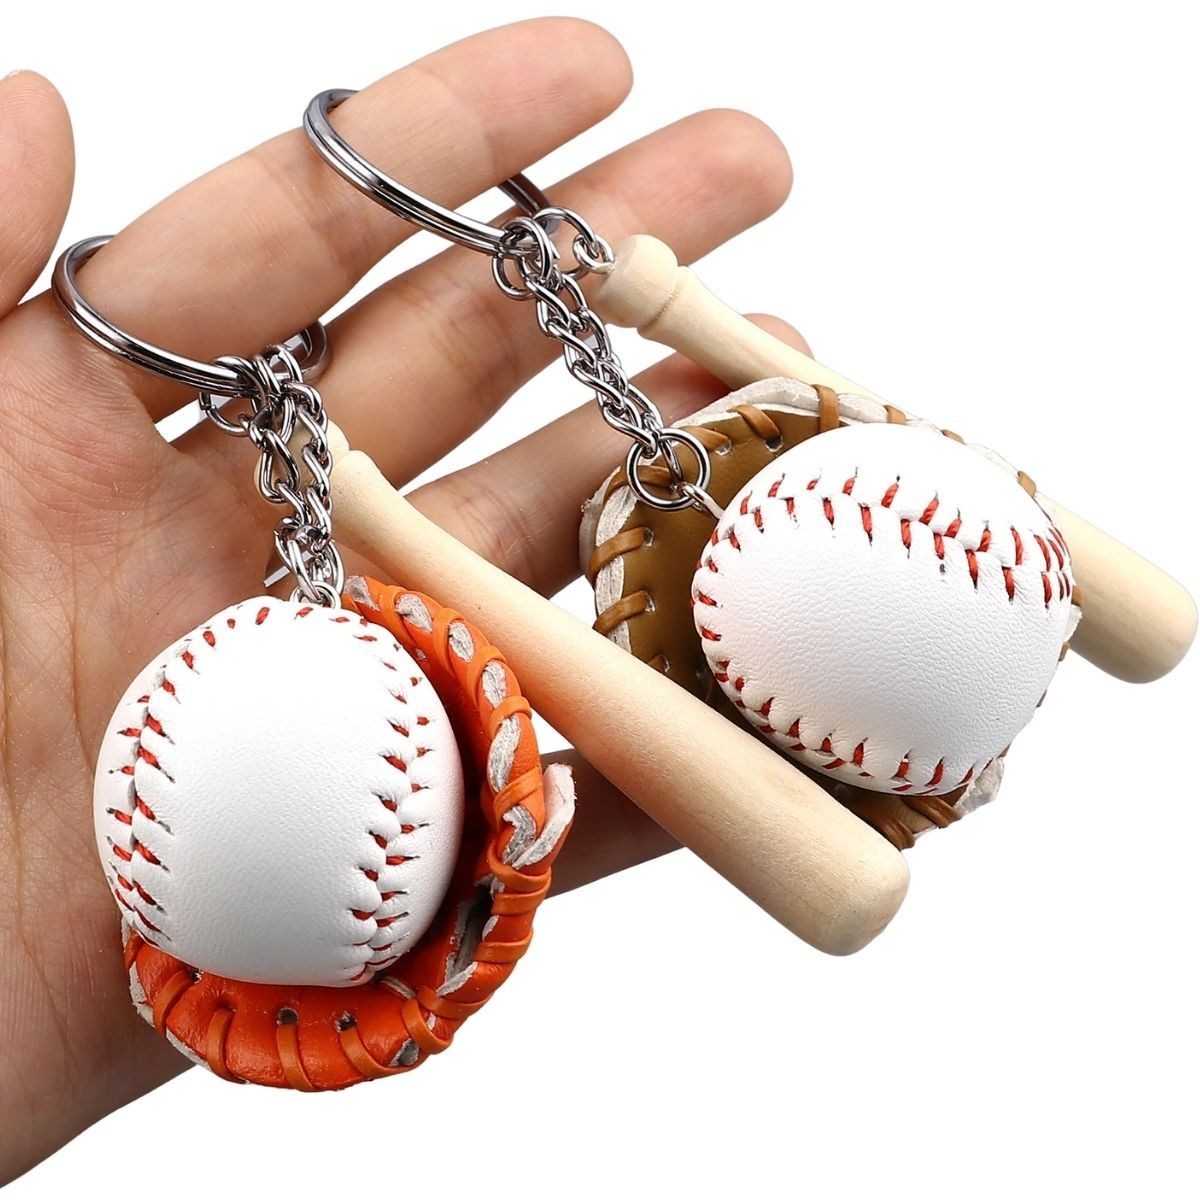 CLZ192 Gerçekçi Beyzbol Tasarımlı Şık Anahtarlık Kolye Çanta Süsü Baseball Keychain (4172)